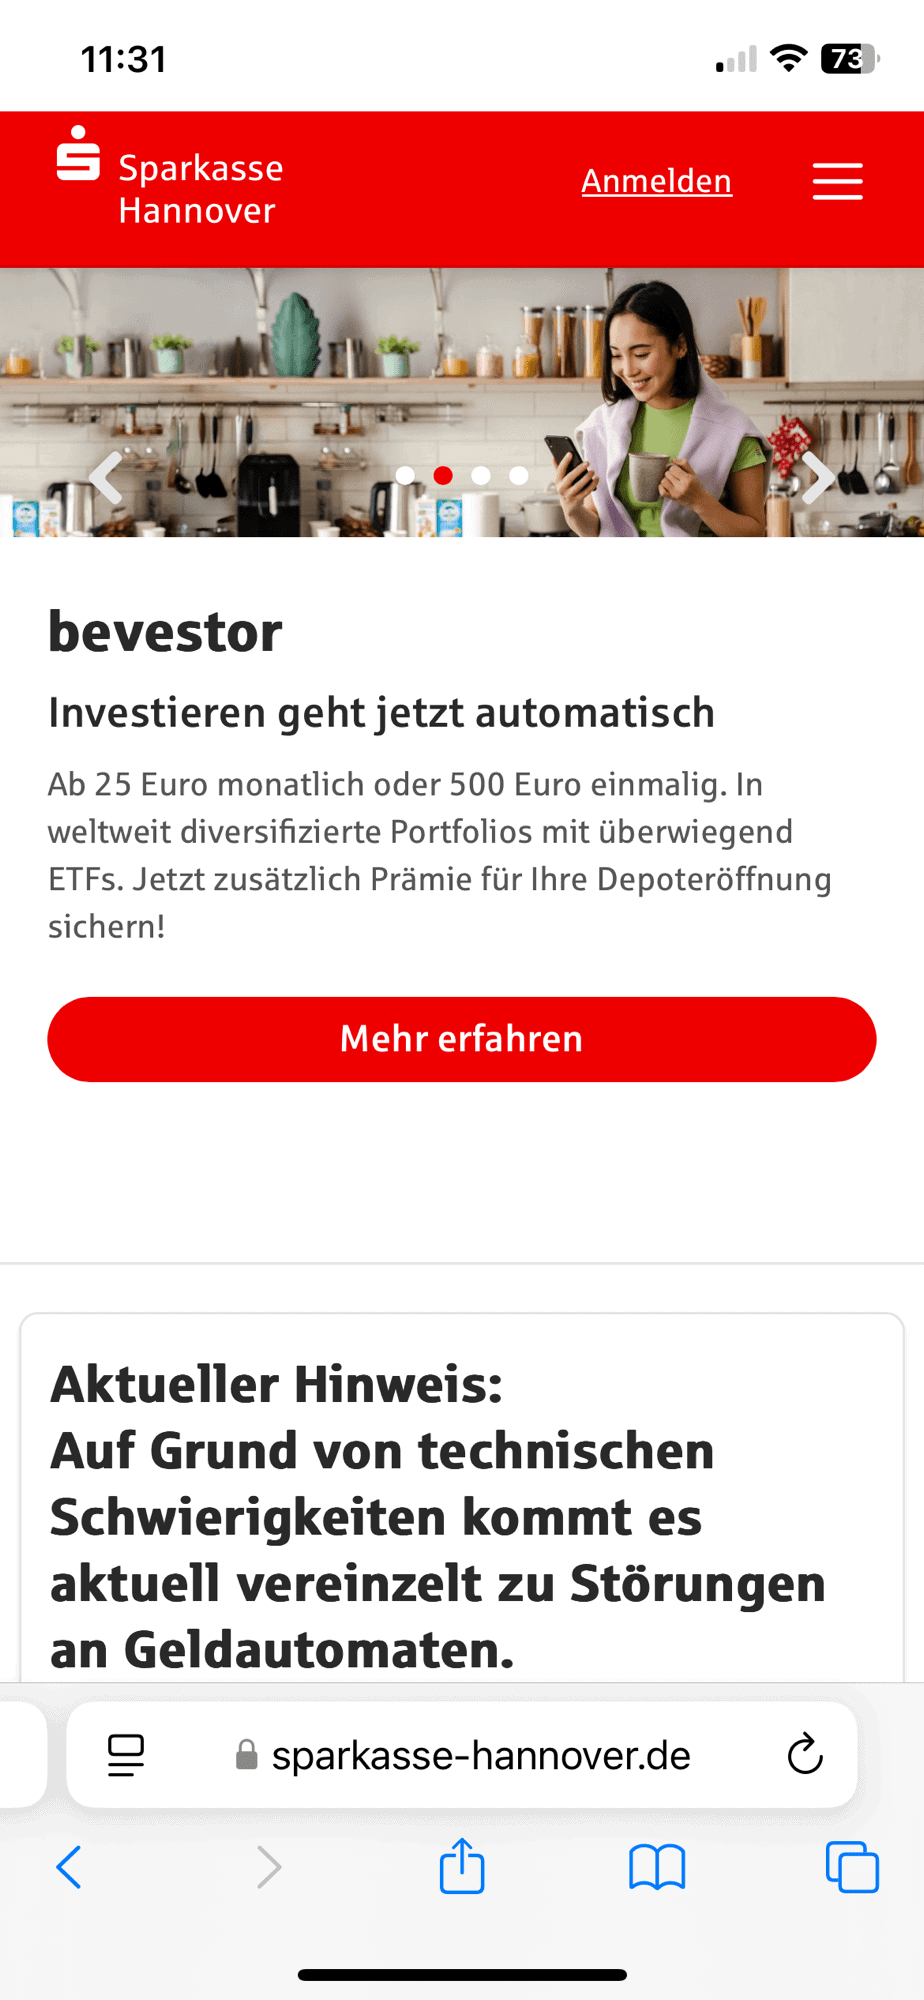 Sparkasse-Hannover-Site mit Hinweis auf Störungen bei Geldautomaten.